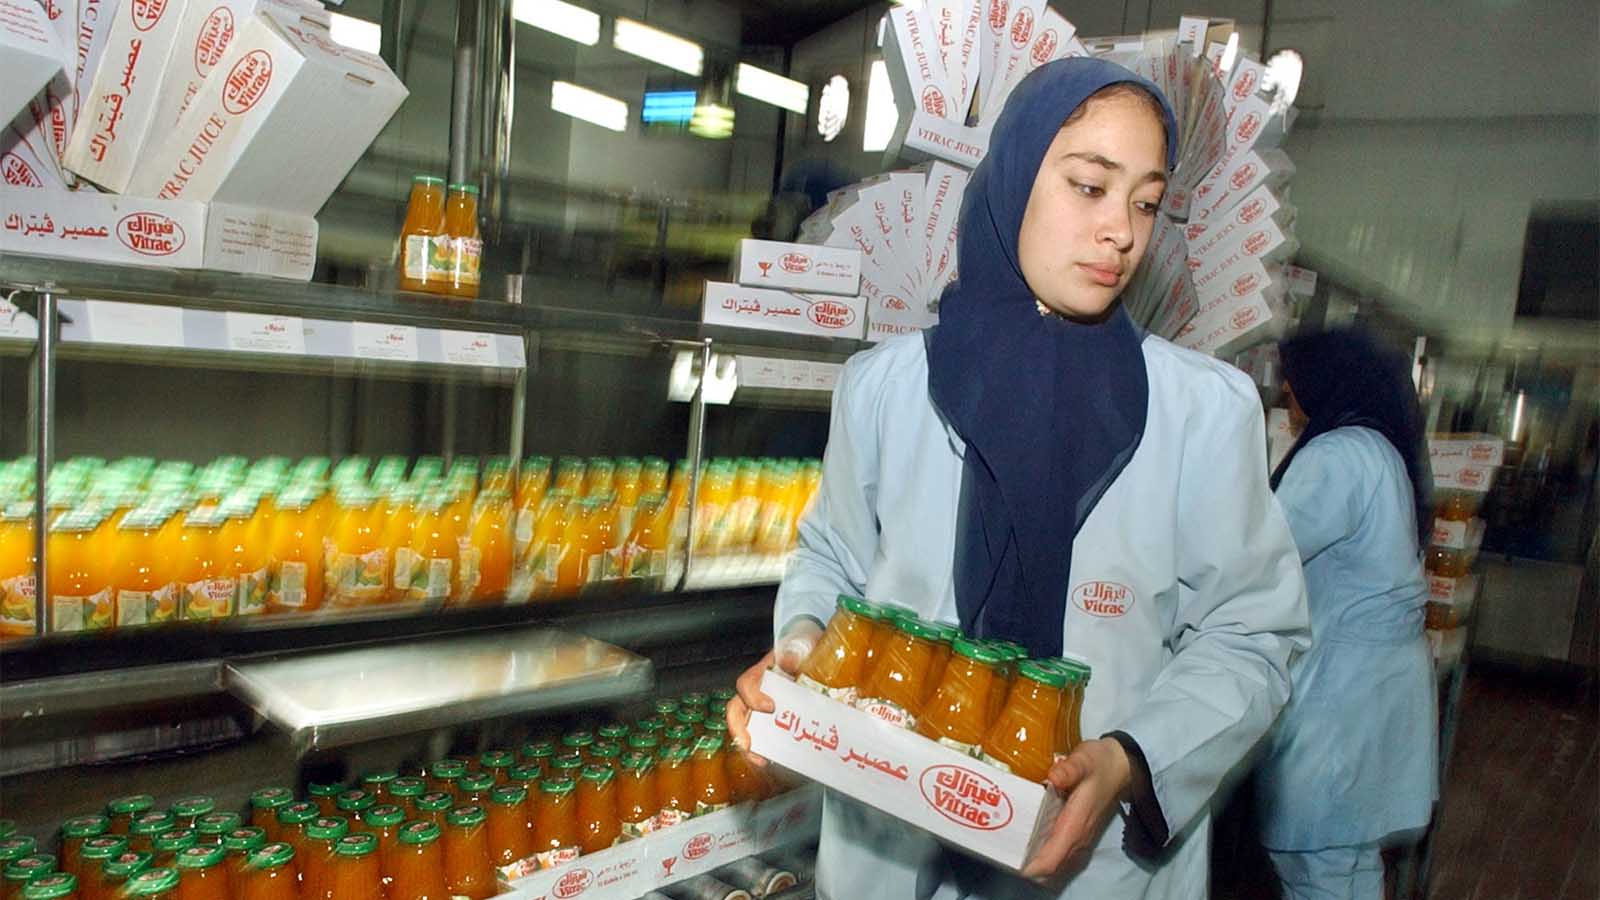 עובדת מצרית סוחבת ארגז מיצים במפעל בקהיר שנמצא באזור הסחר החופשי של מצרים וישראל. ארכיון 18 בדצמבר 2004 (AP Photo/Amr Nabil)